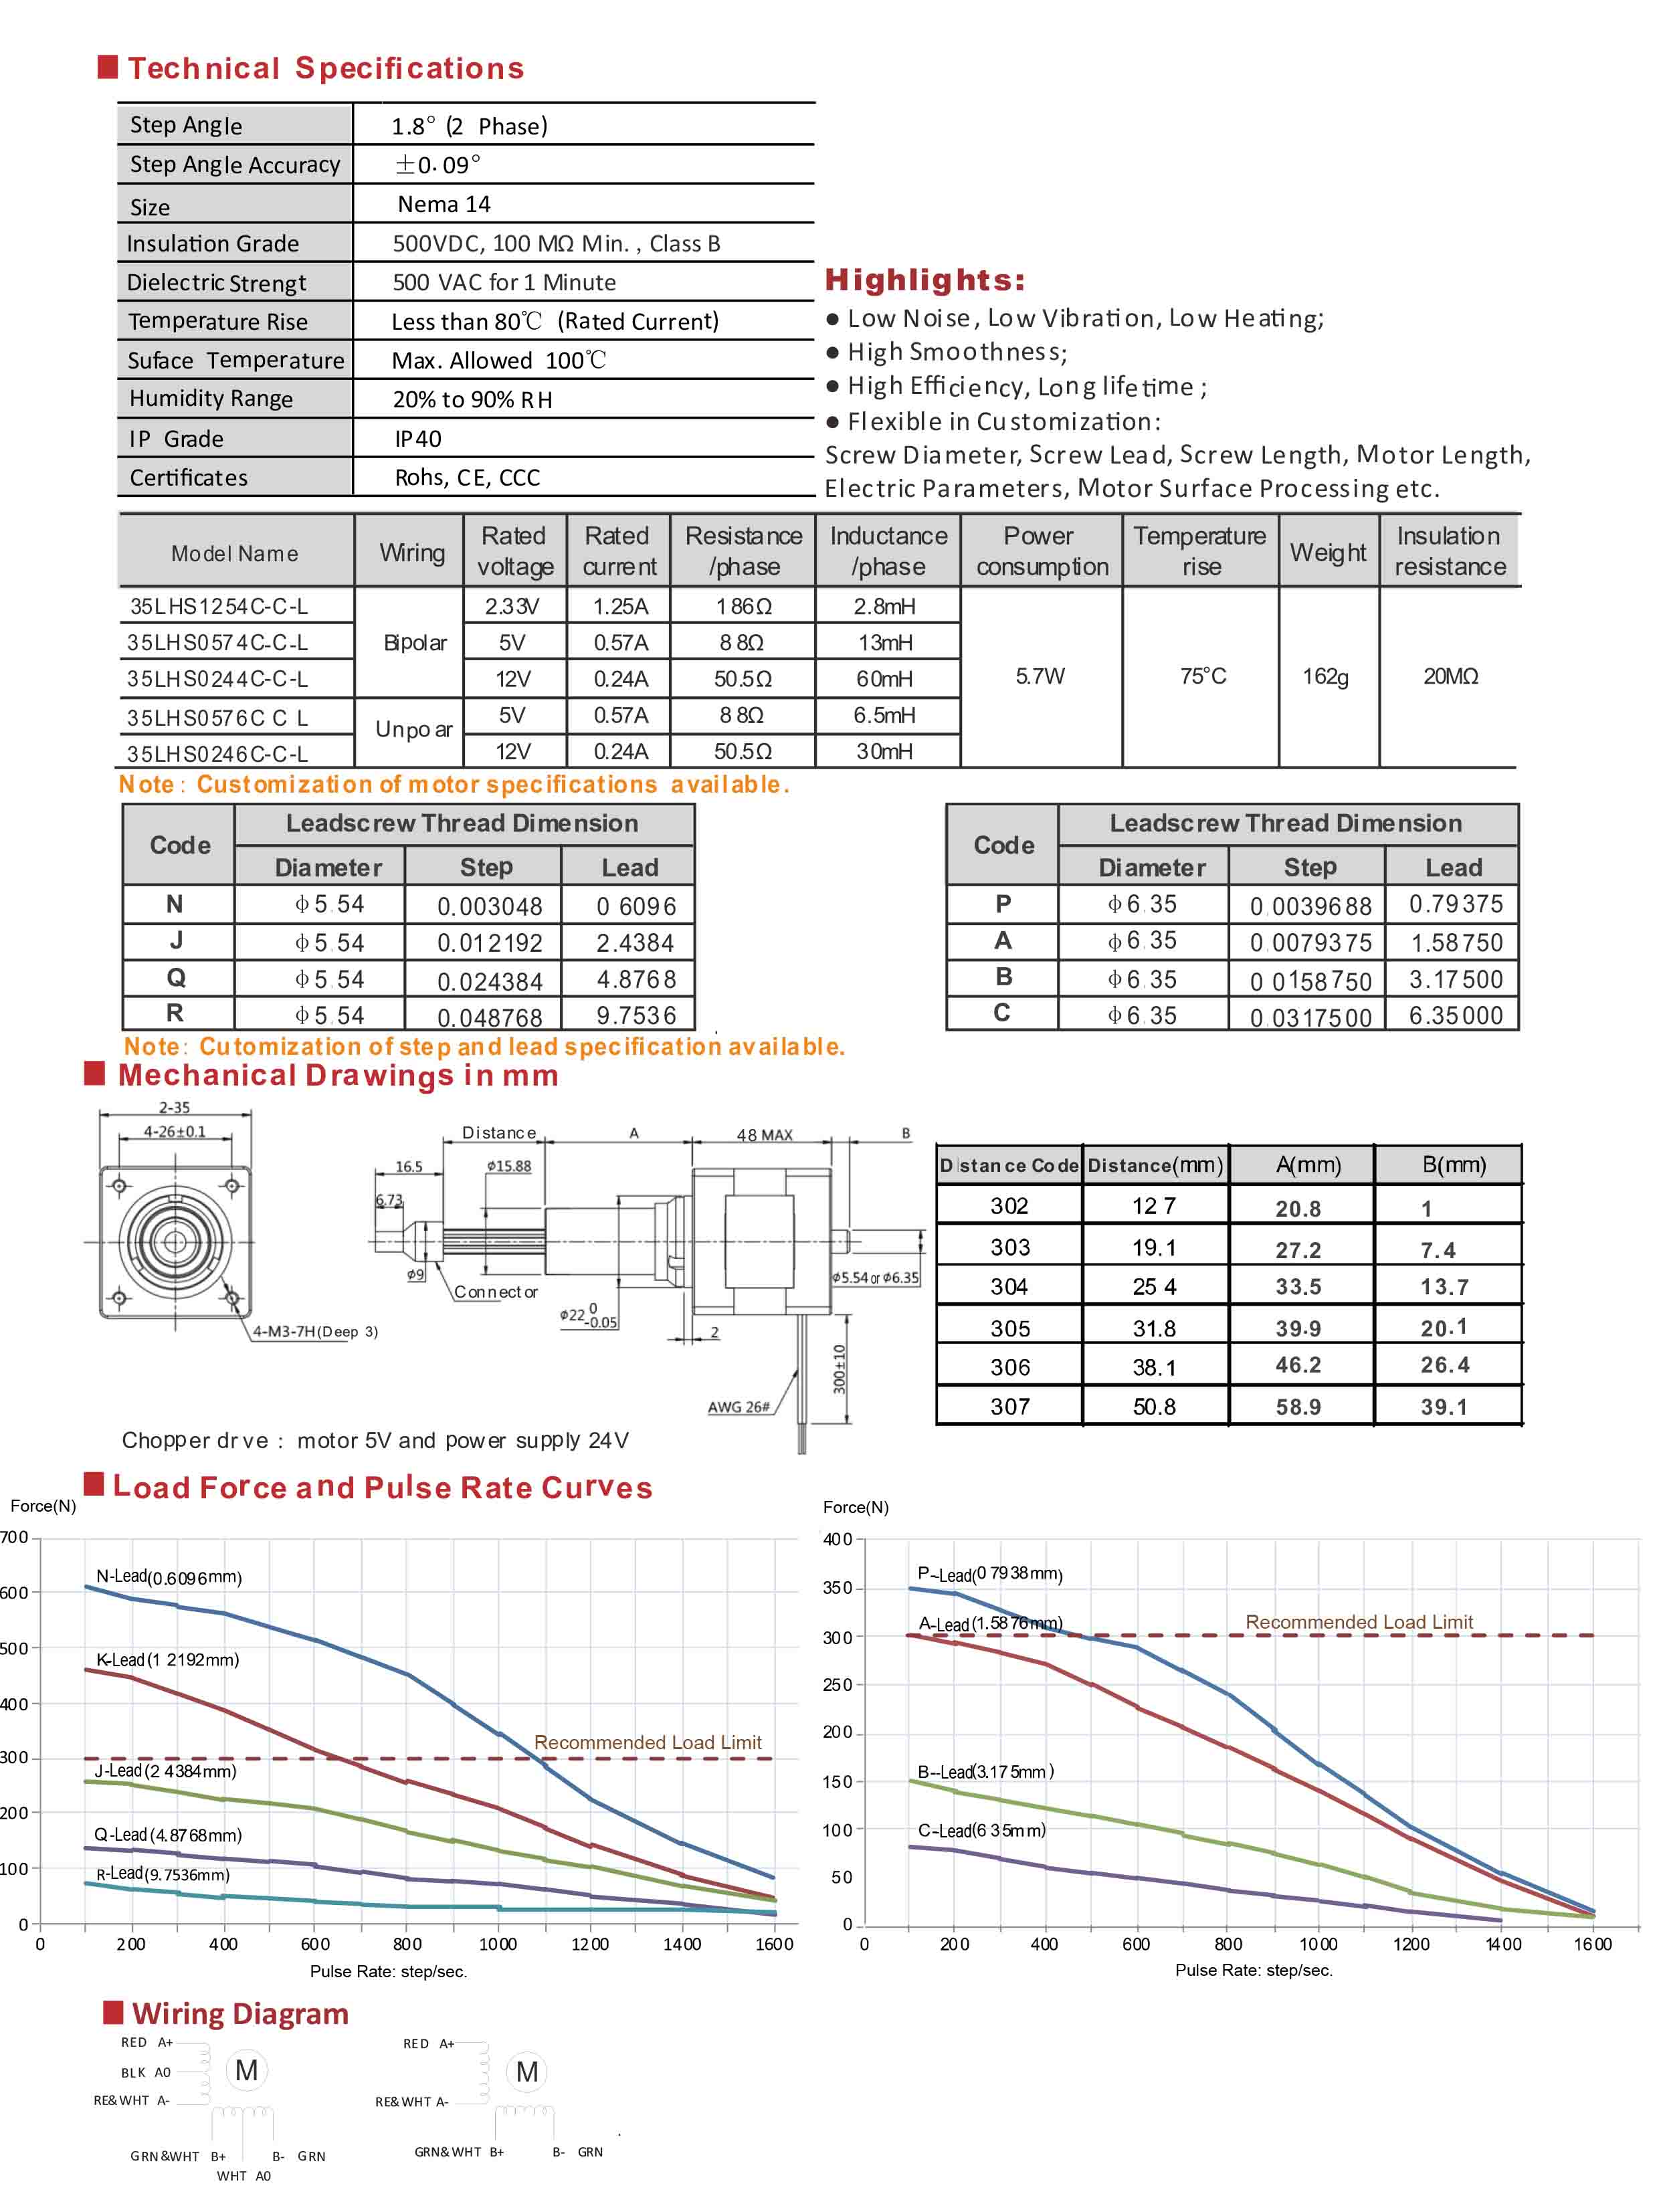 35LHS1254 0574 0244 0576 0246 Series  Captive Double Stack Hybrid Stepper Motors Data Sheet.jpg